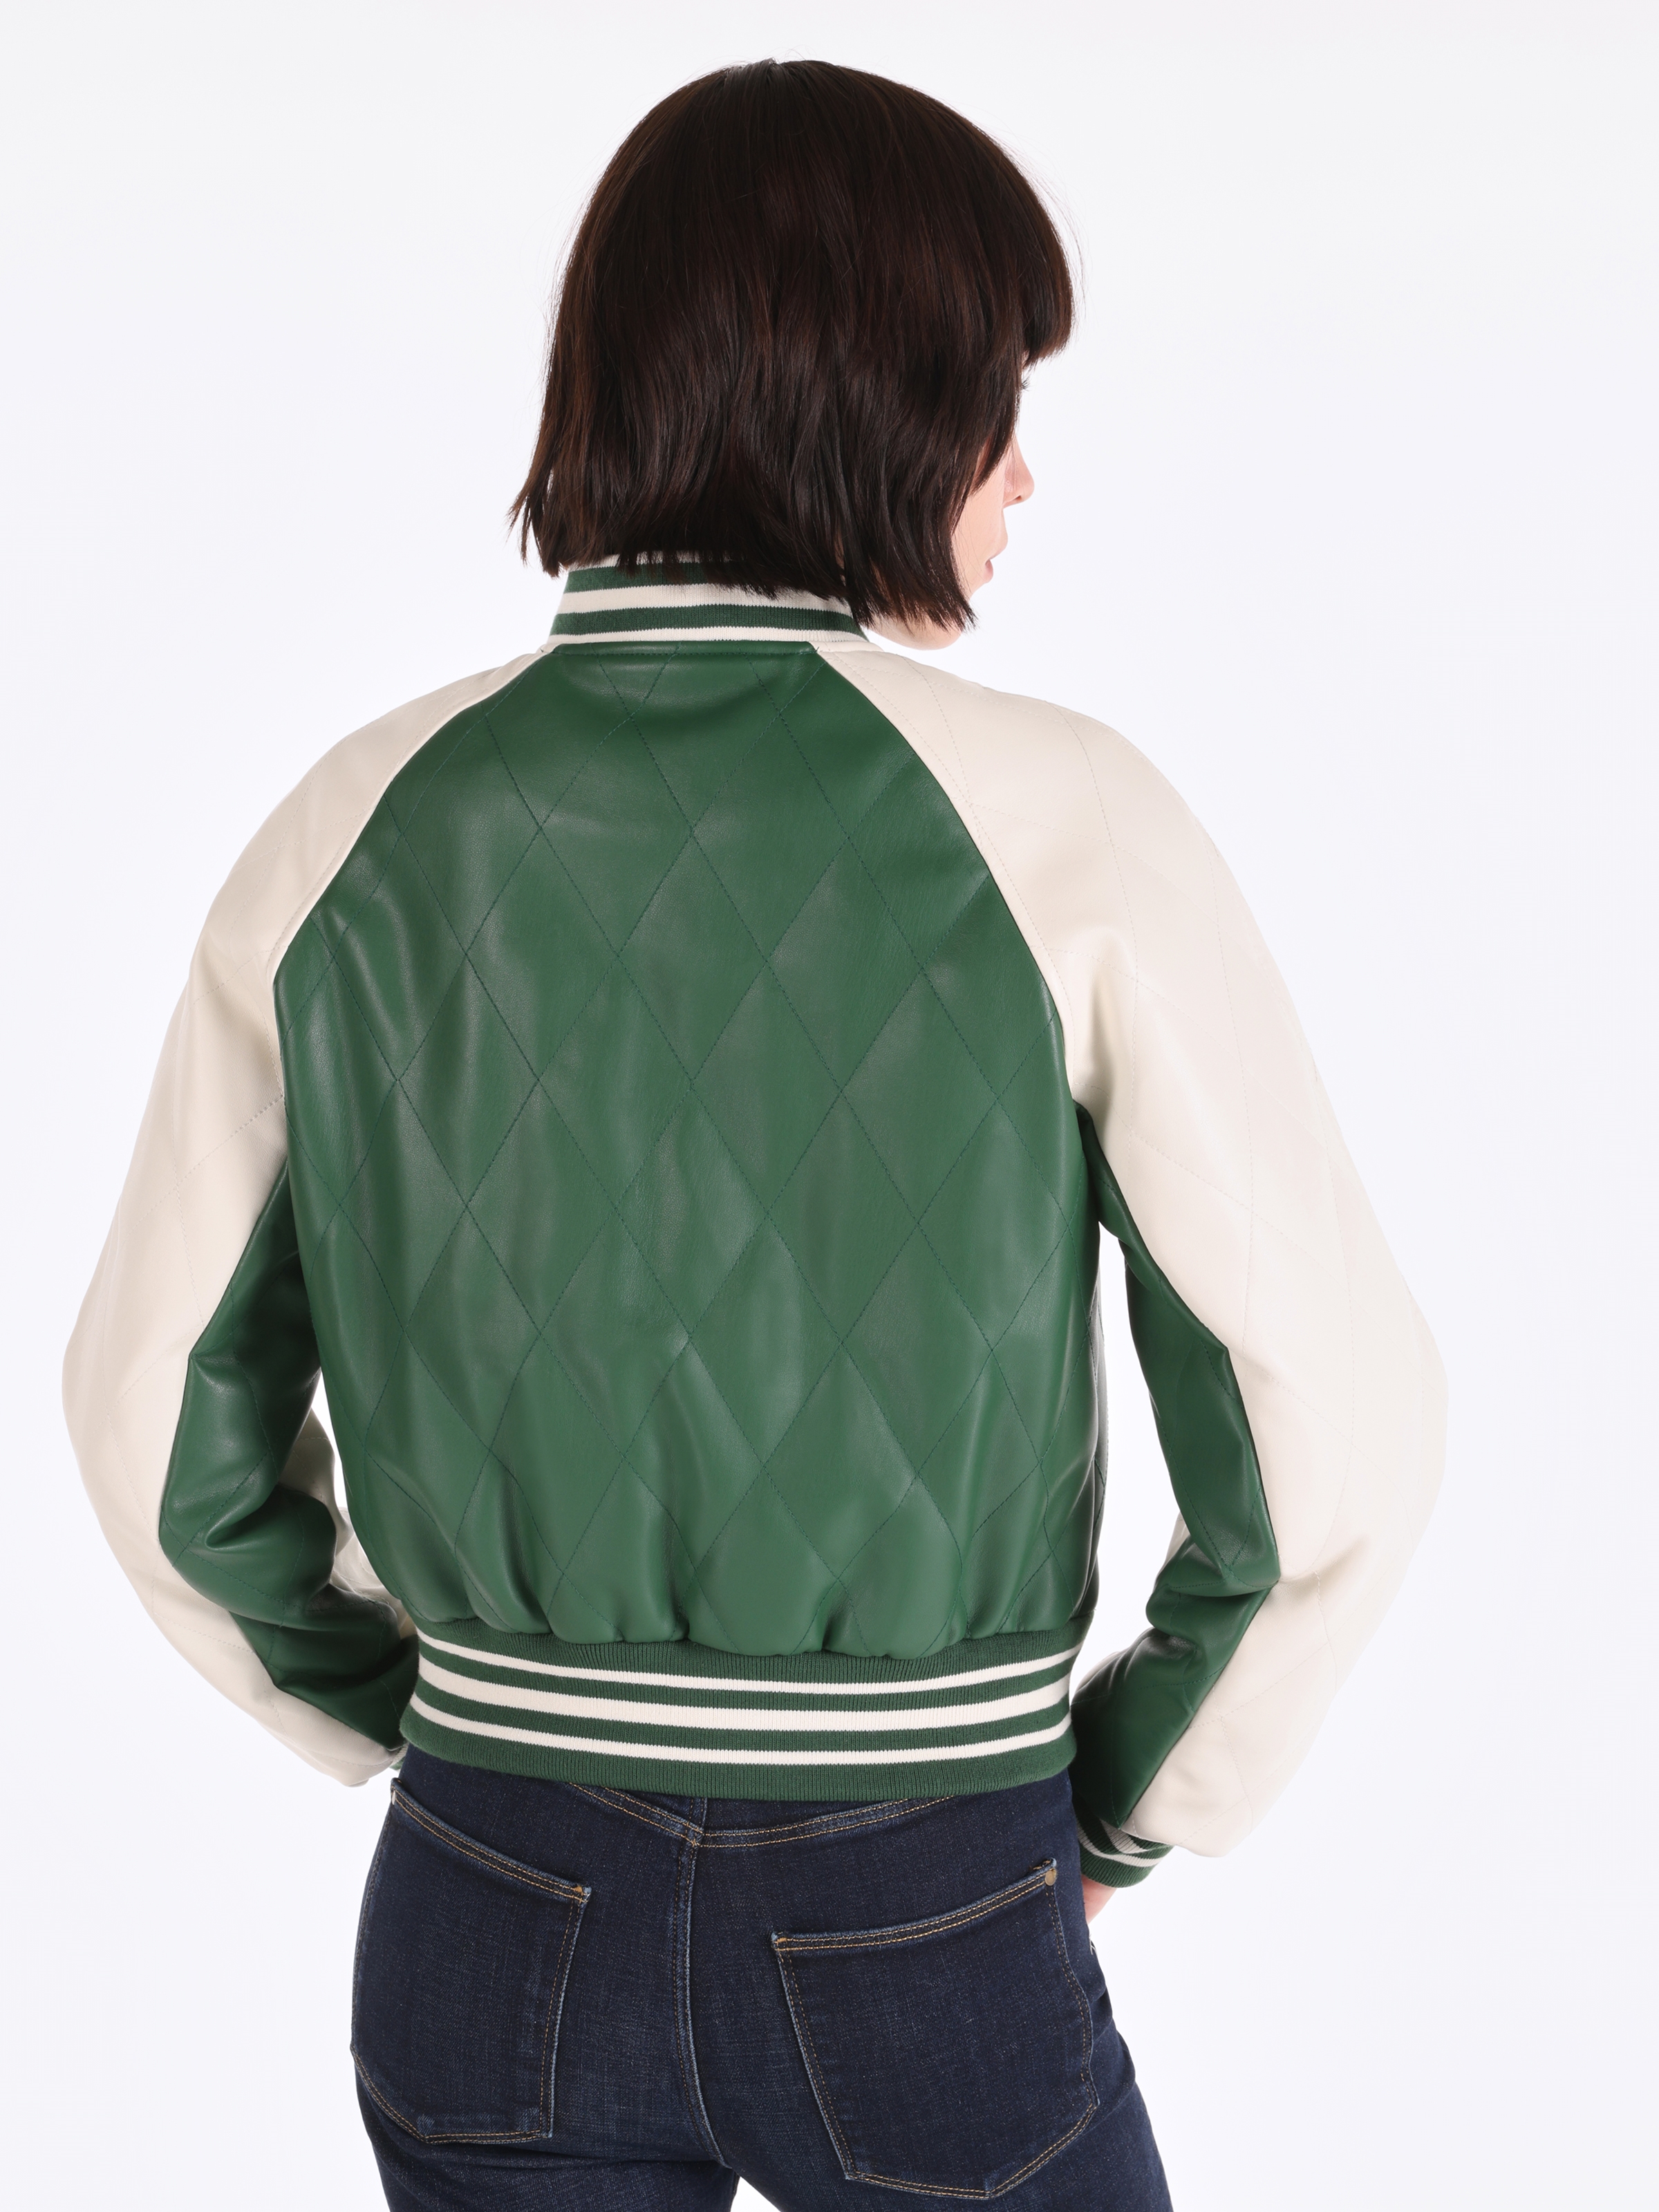 Показати інформацію про  Куртка з еко-шкіри Жіноча Зелена  